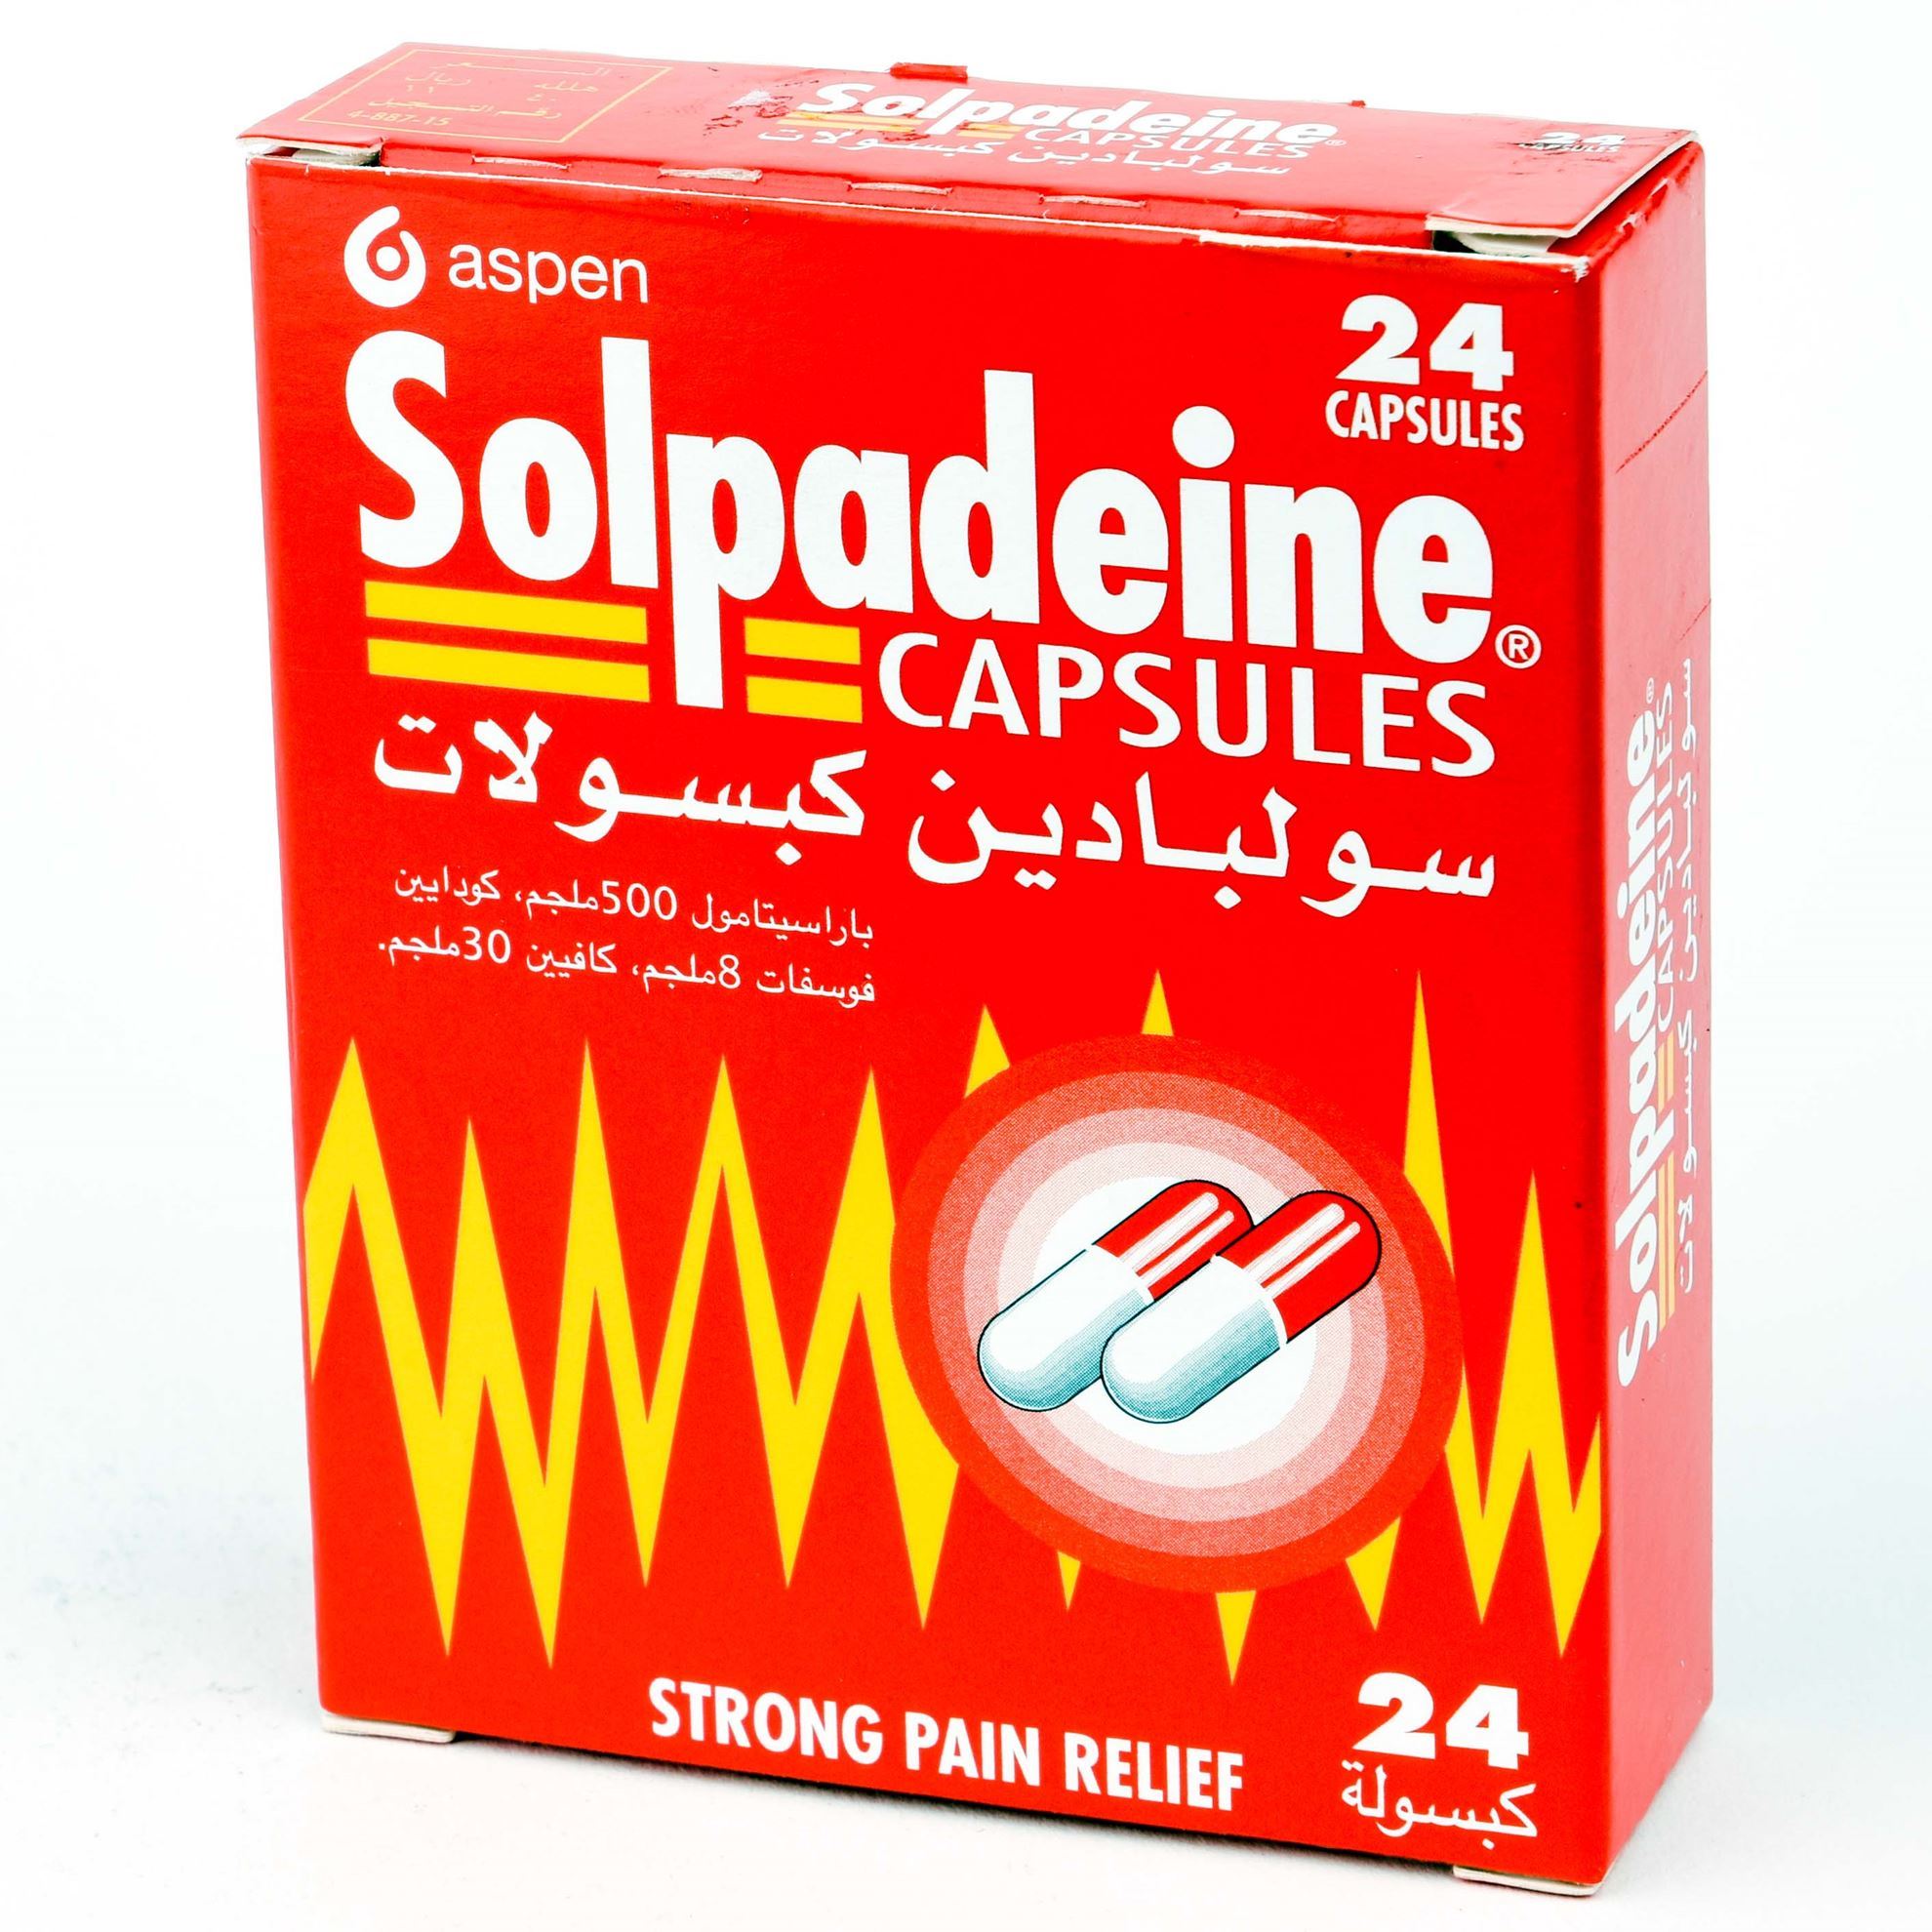 SOLPADEINE 24 CAPSULES